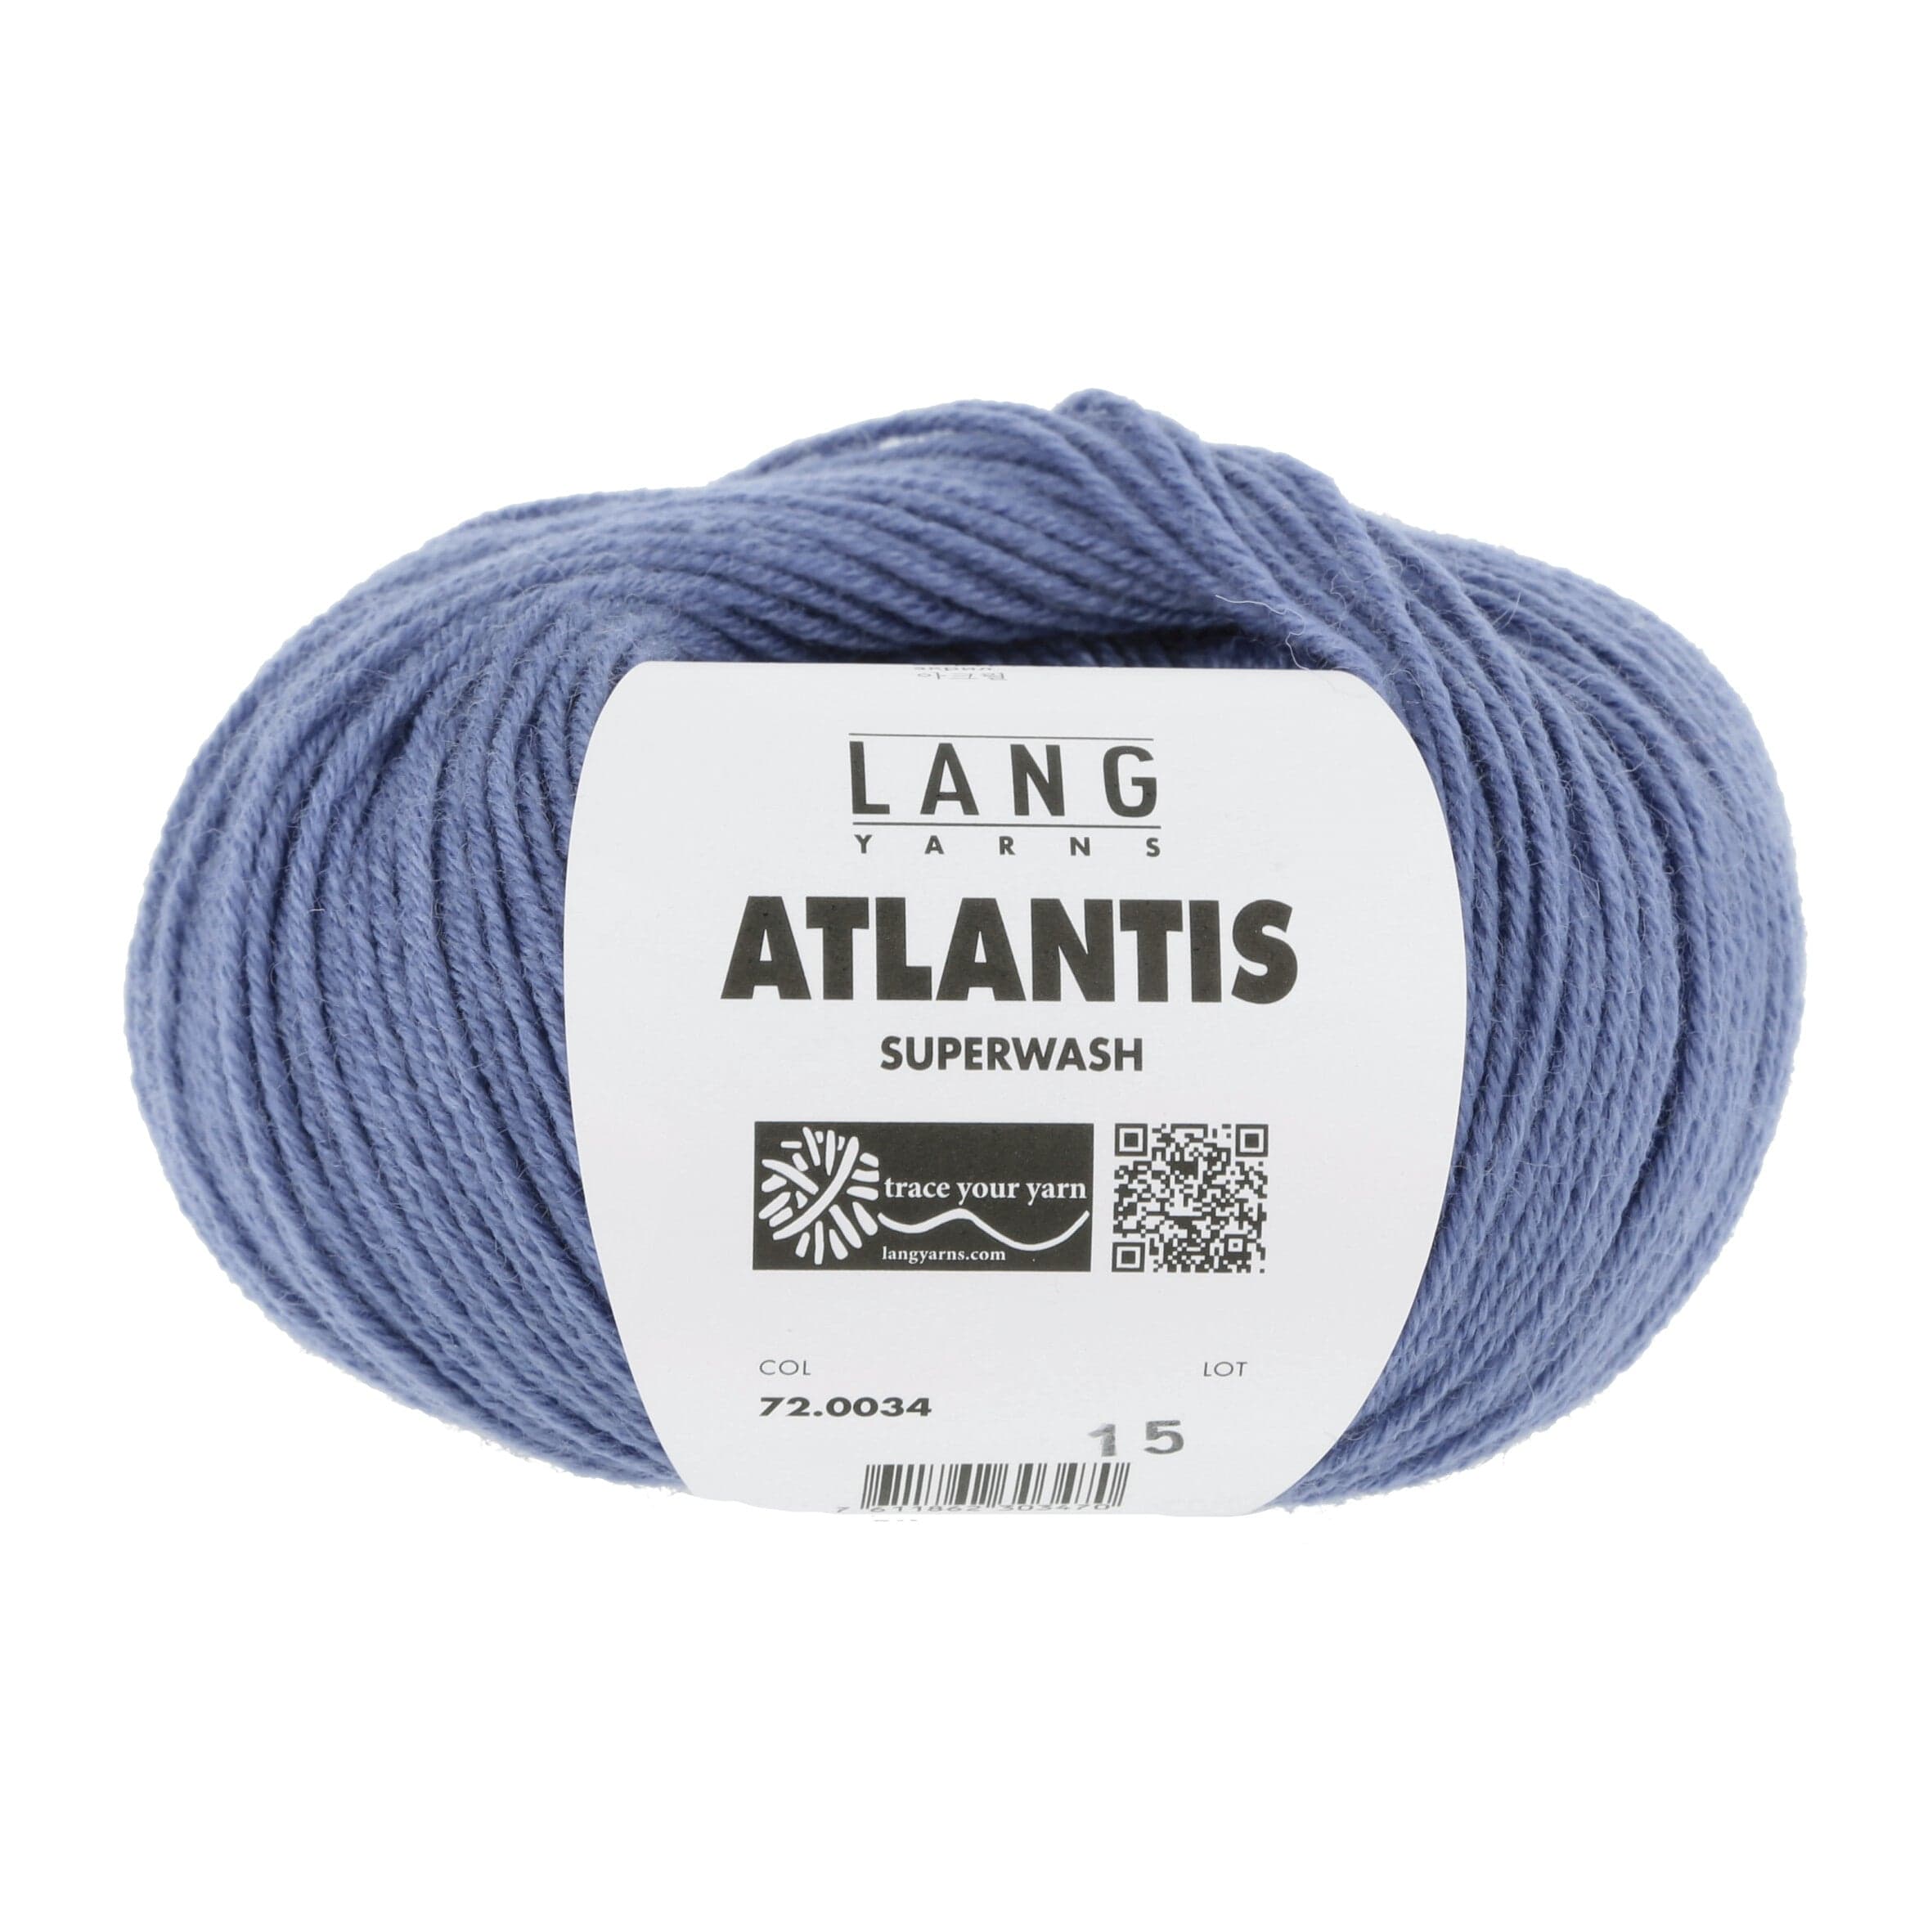 LANG YARNS Garn 0034 - blau ATLANTIS